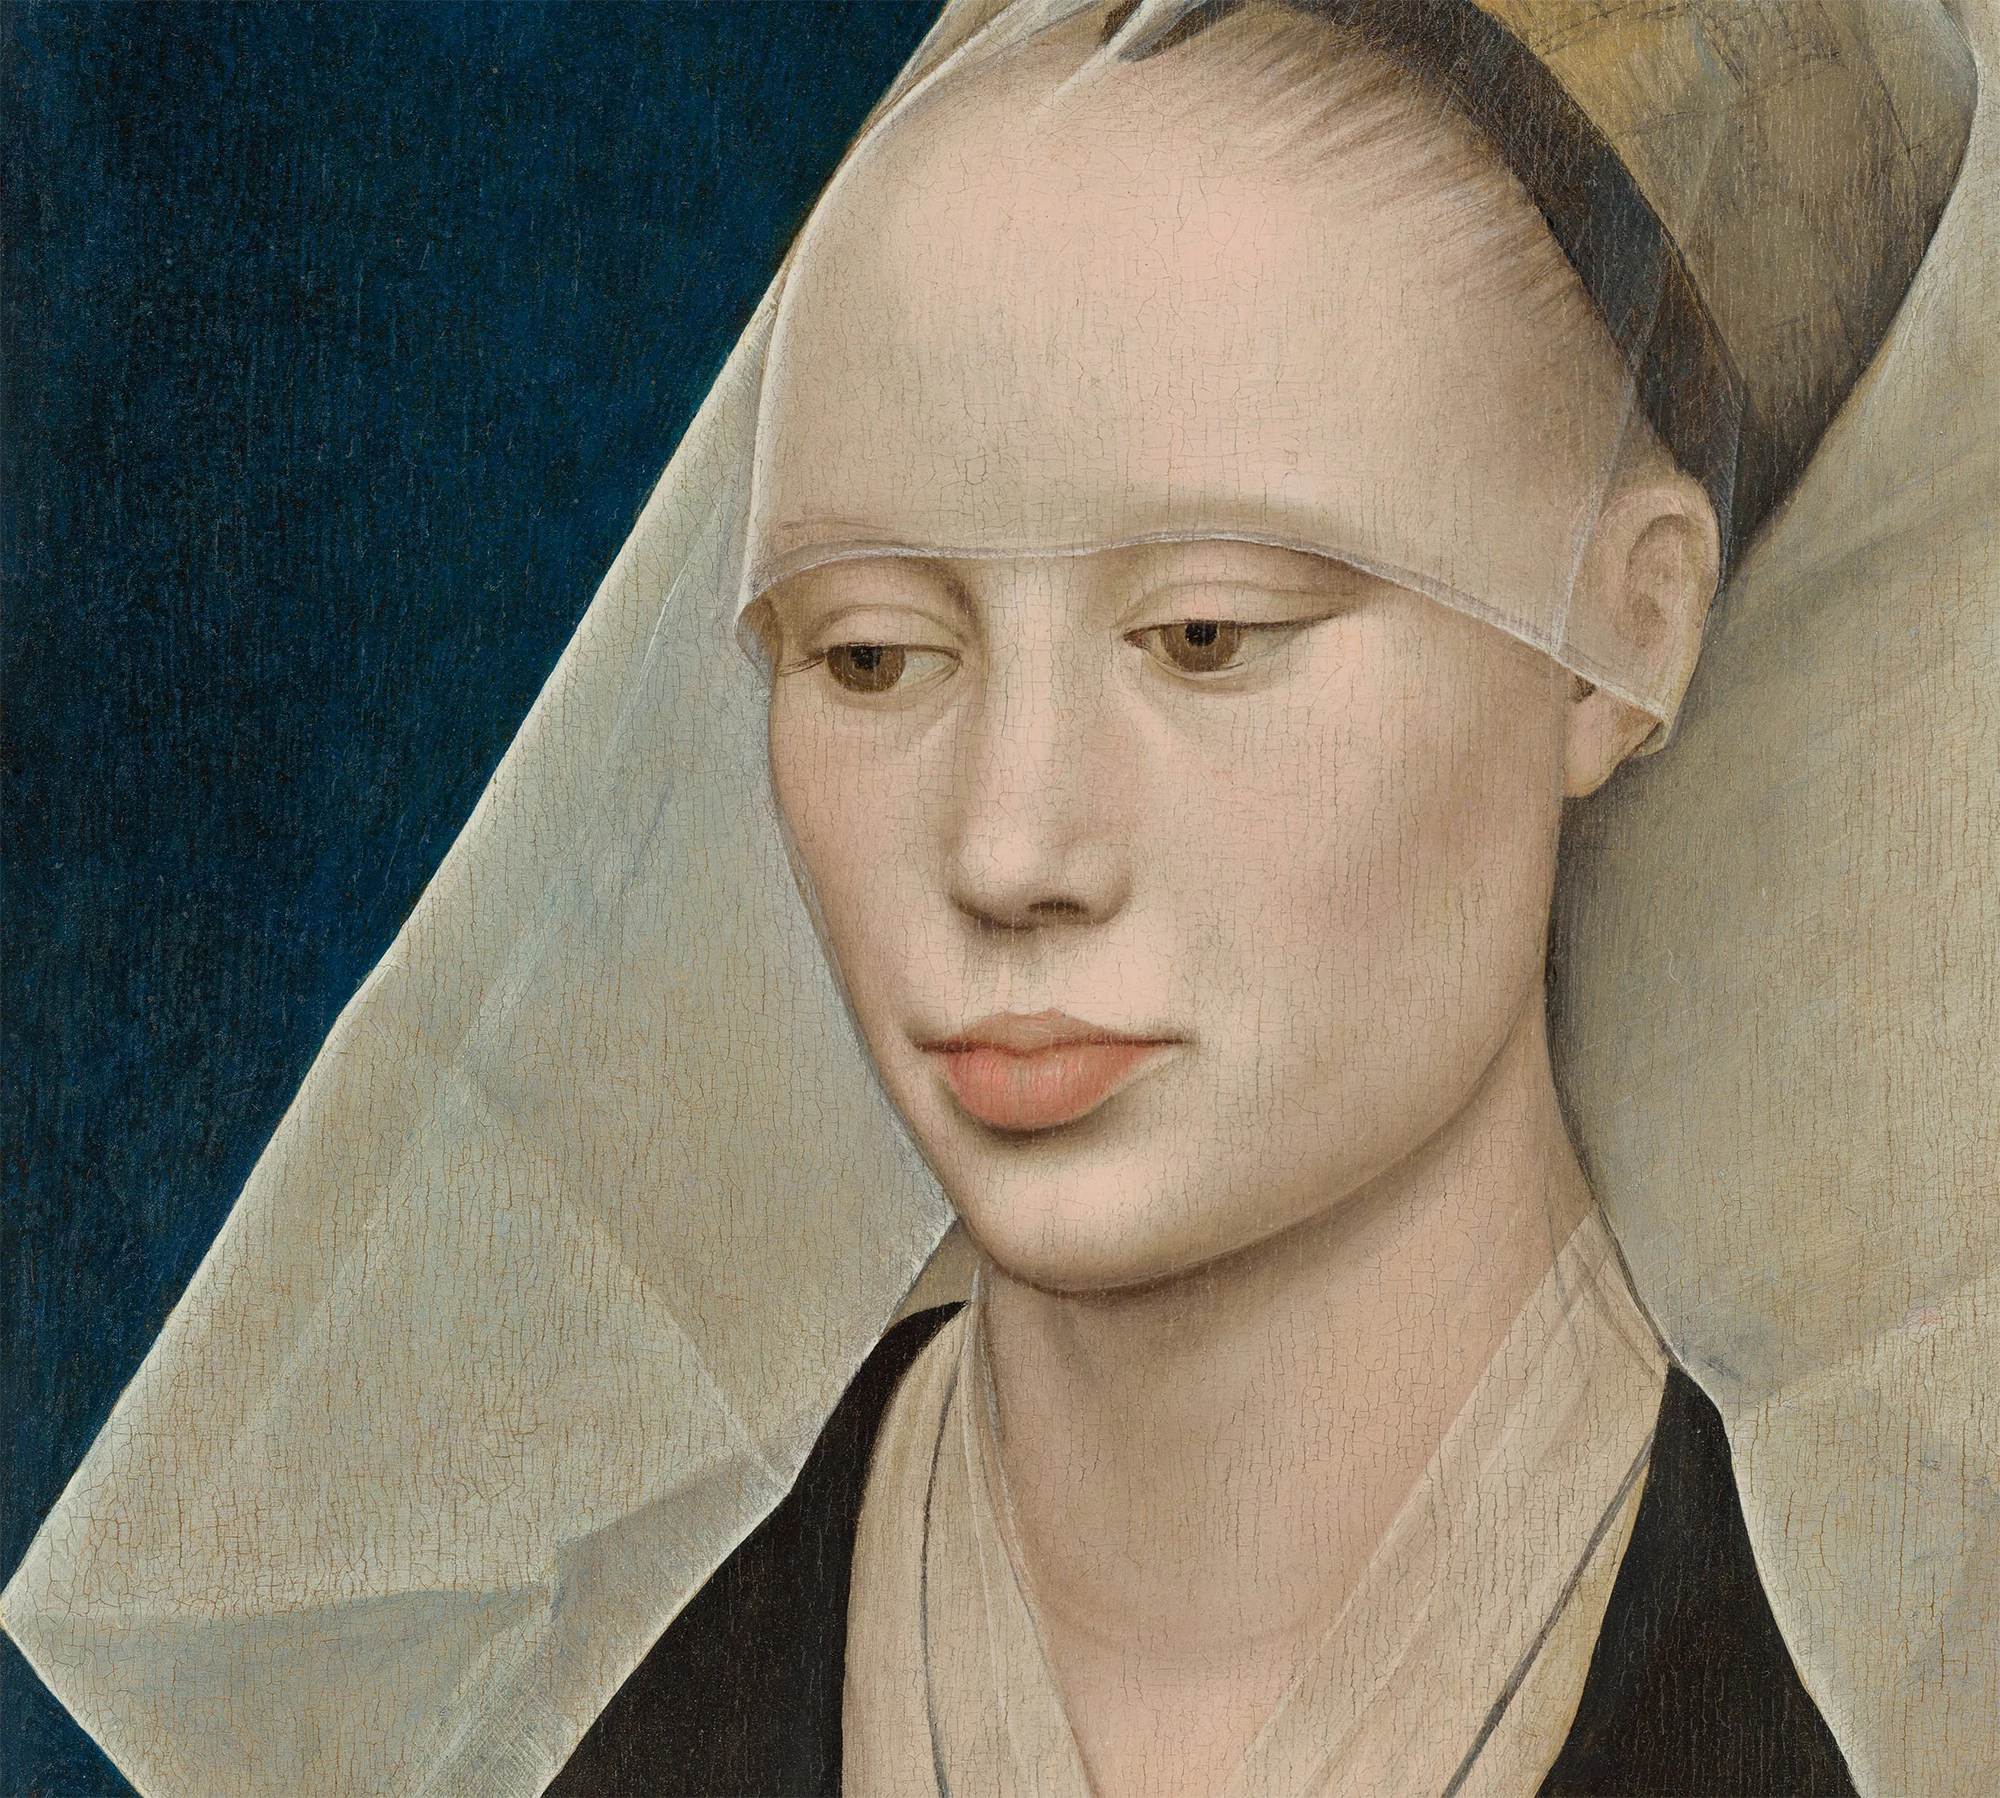 Rogier van der Weyden, The Artists